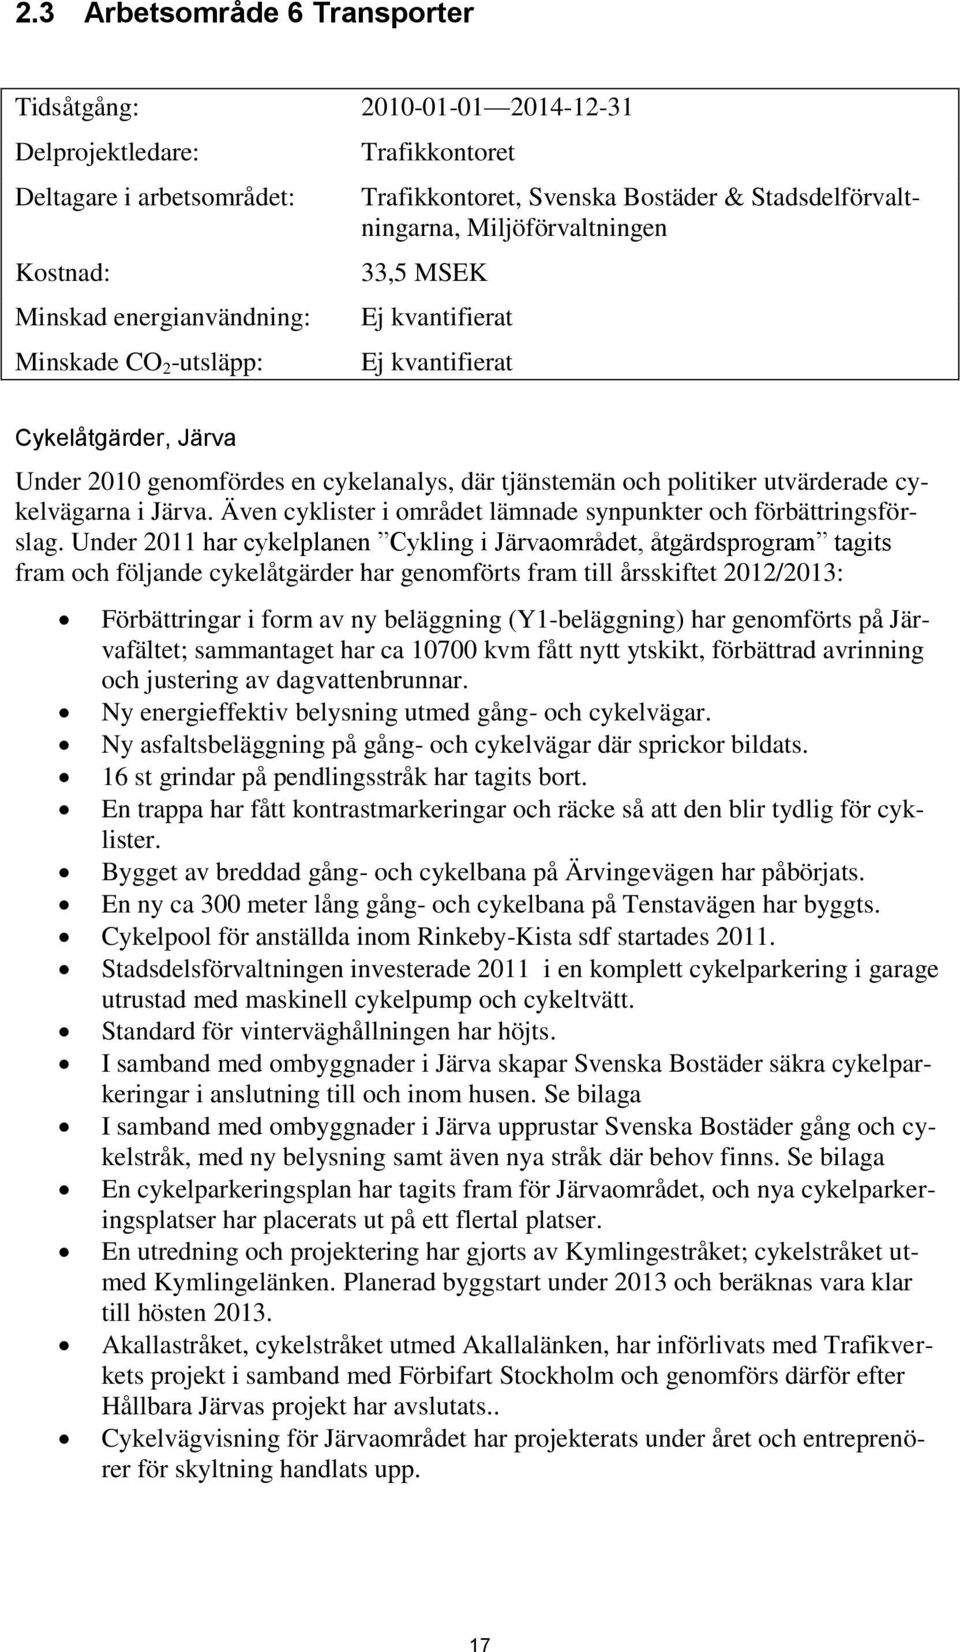 utvärderade cykelvägarna i Järva. Även cyklister i området lämnade synpunkter och förbättringsförslag.